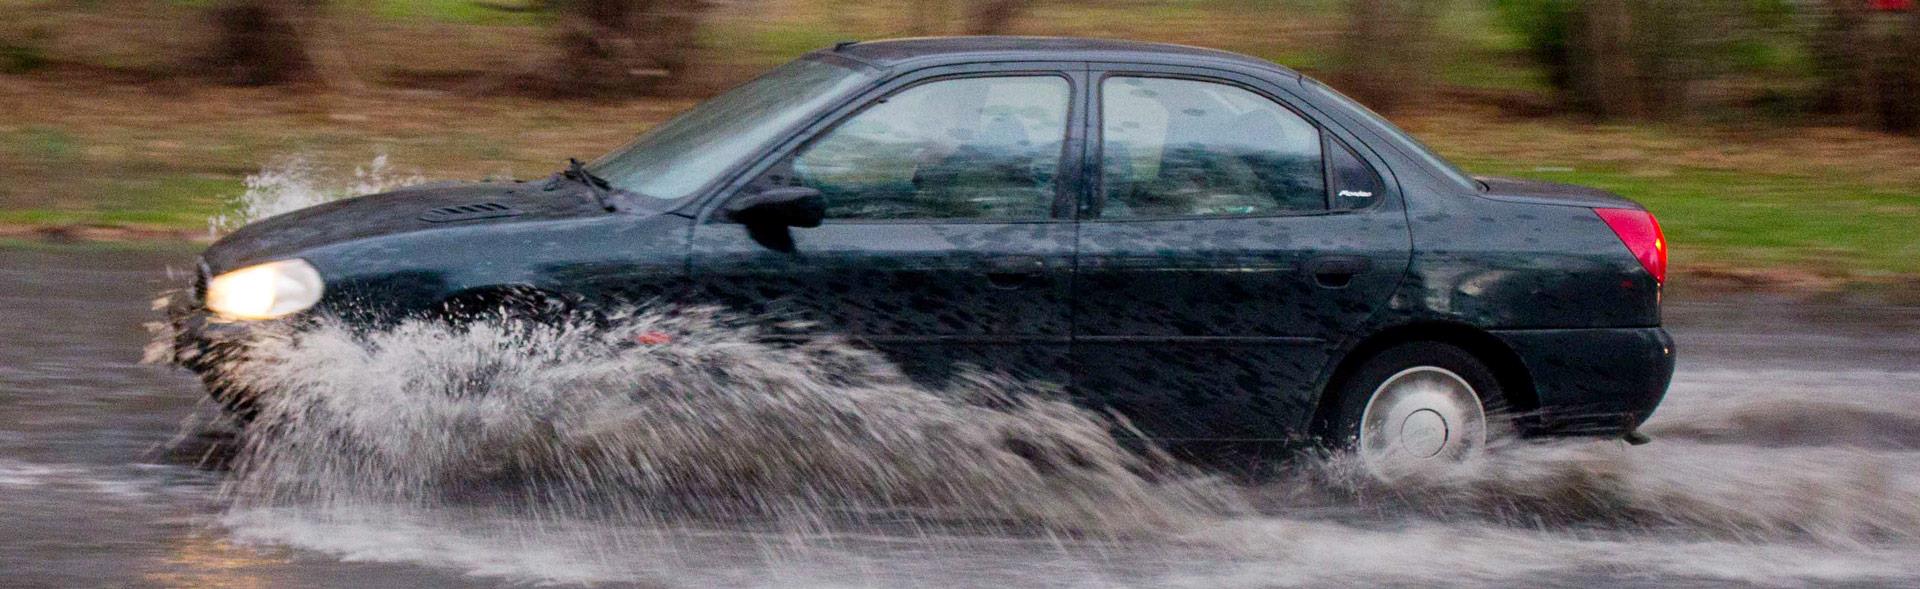 Bil kører på vej med enormt meget regnvand så det sprøjter ud til siderne